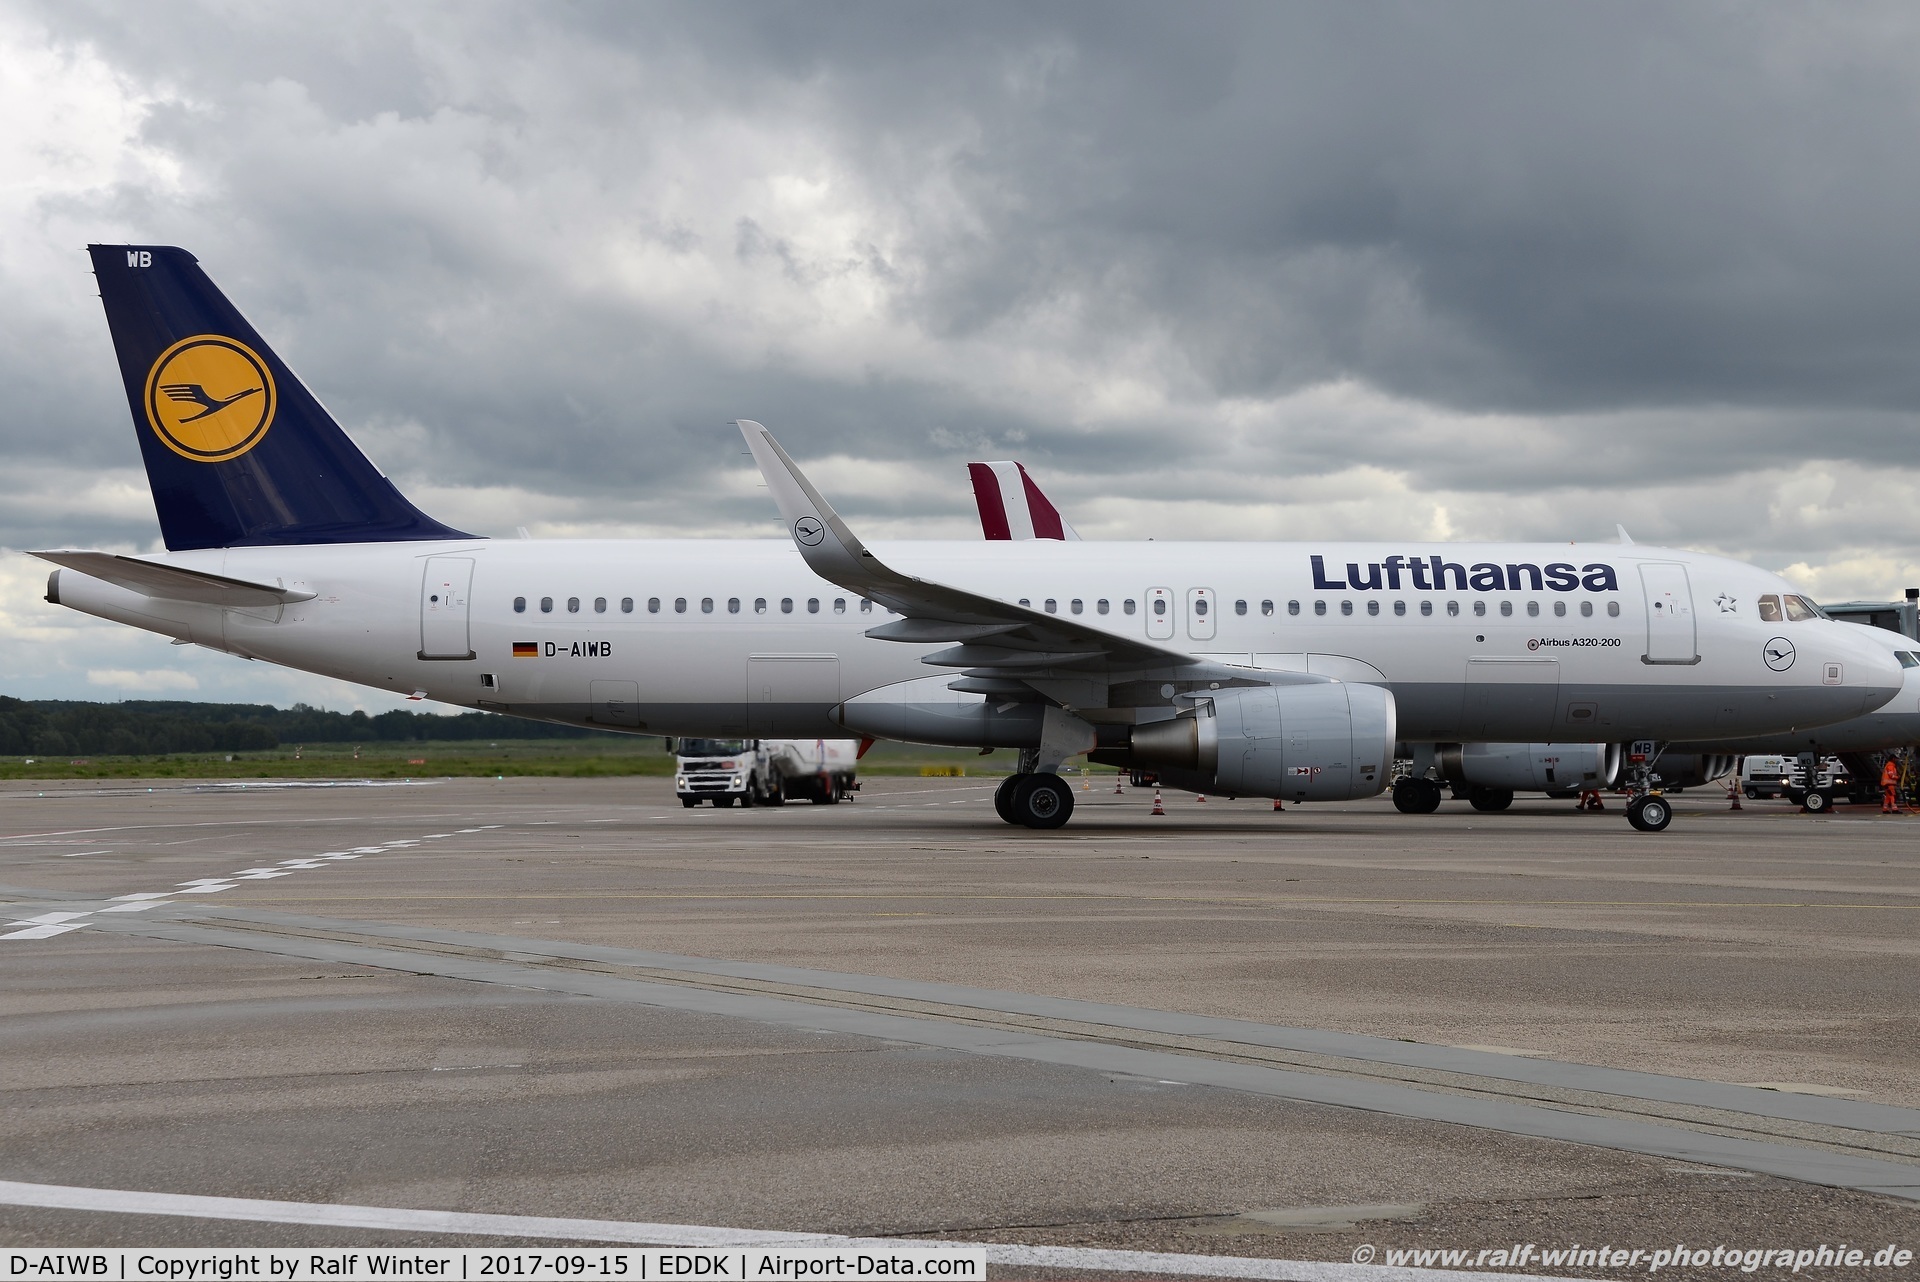 D-AIWB, 2017 Airbus A320-214 C/N 7699, Airbus A320-214(W) - LH DLH Lufthansa - 7699 - D-AIWB - 15.09.2017 - CGN